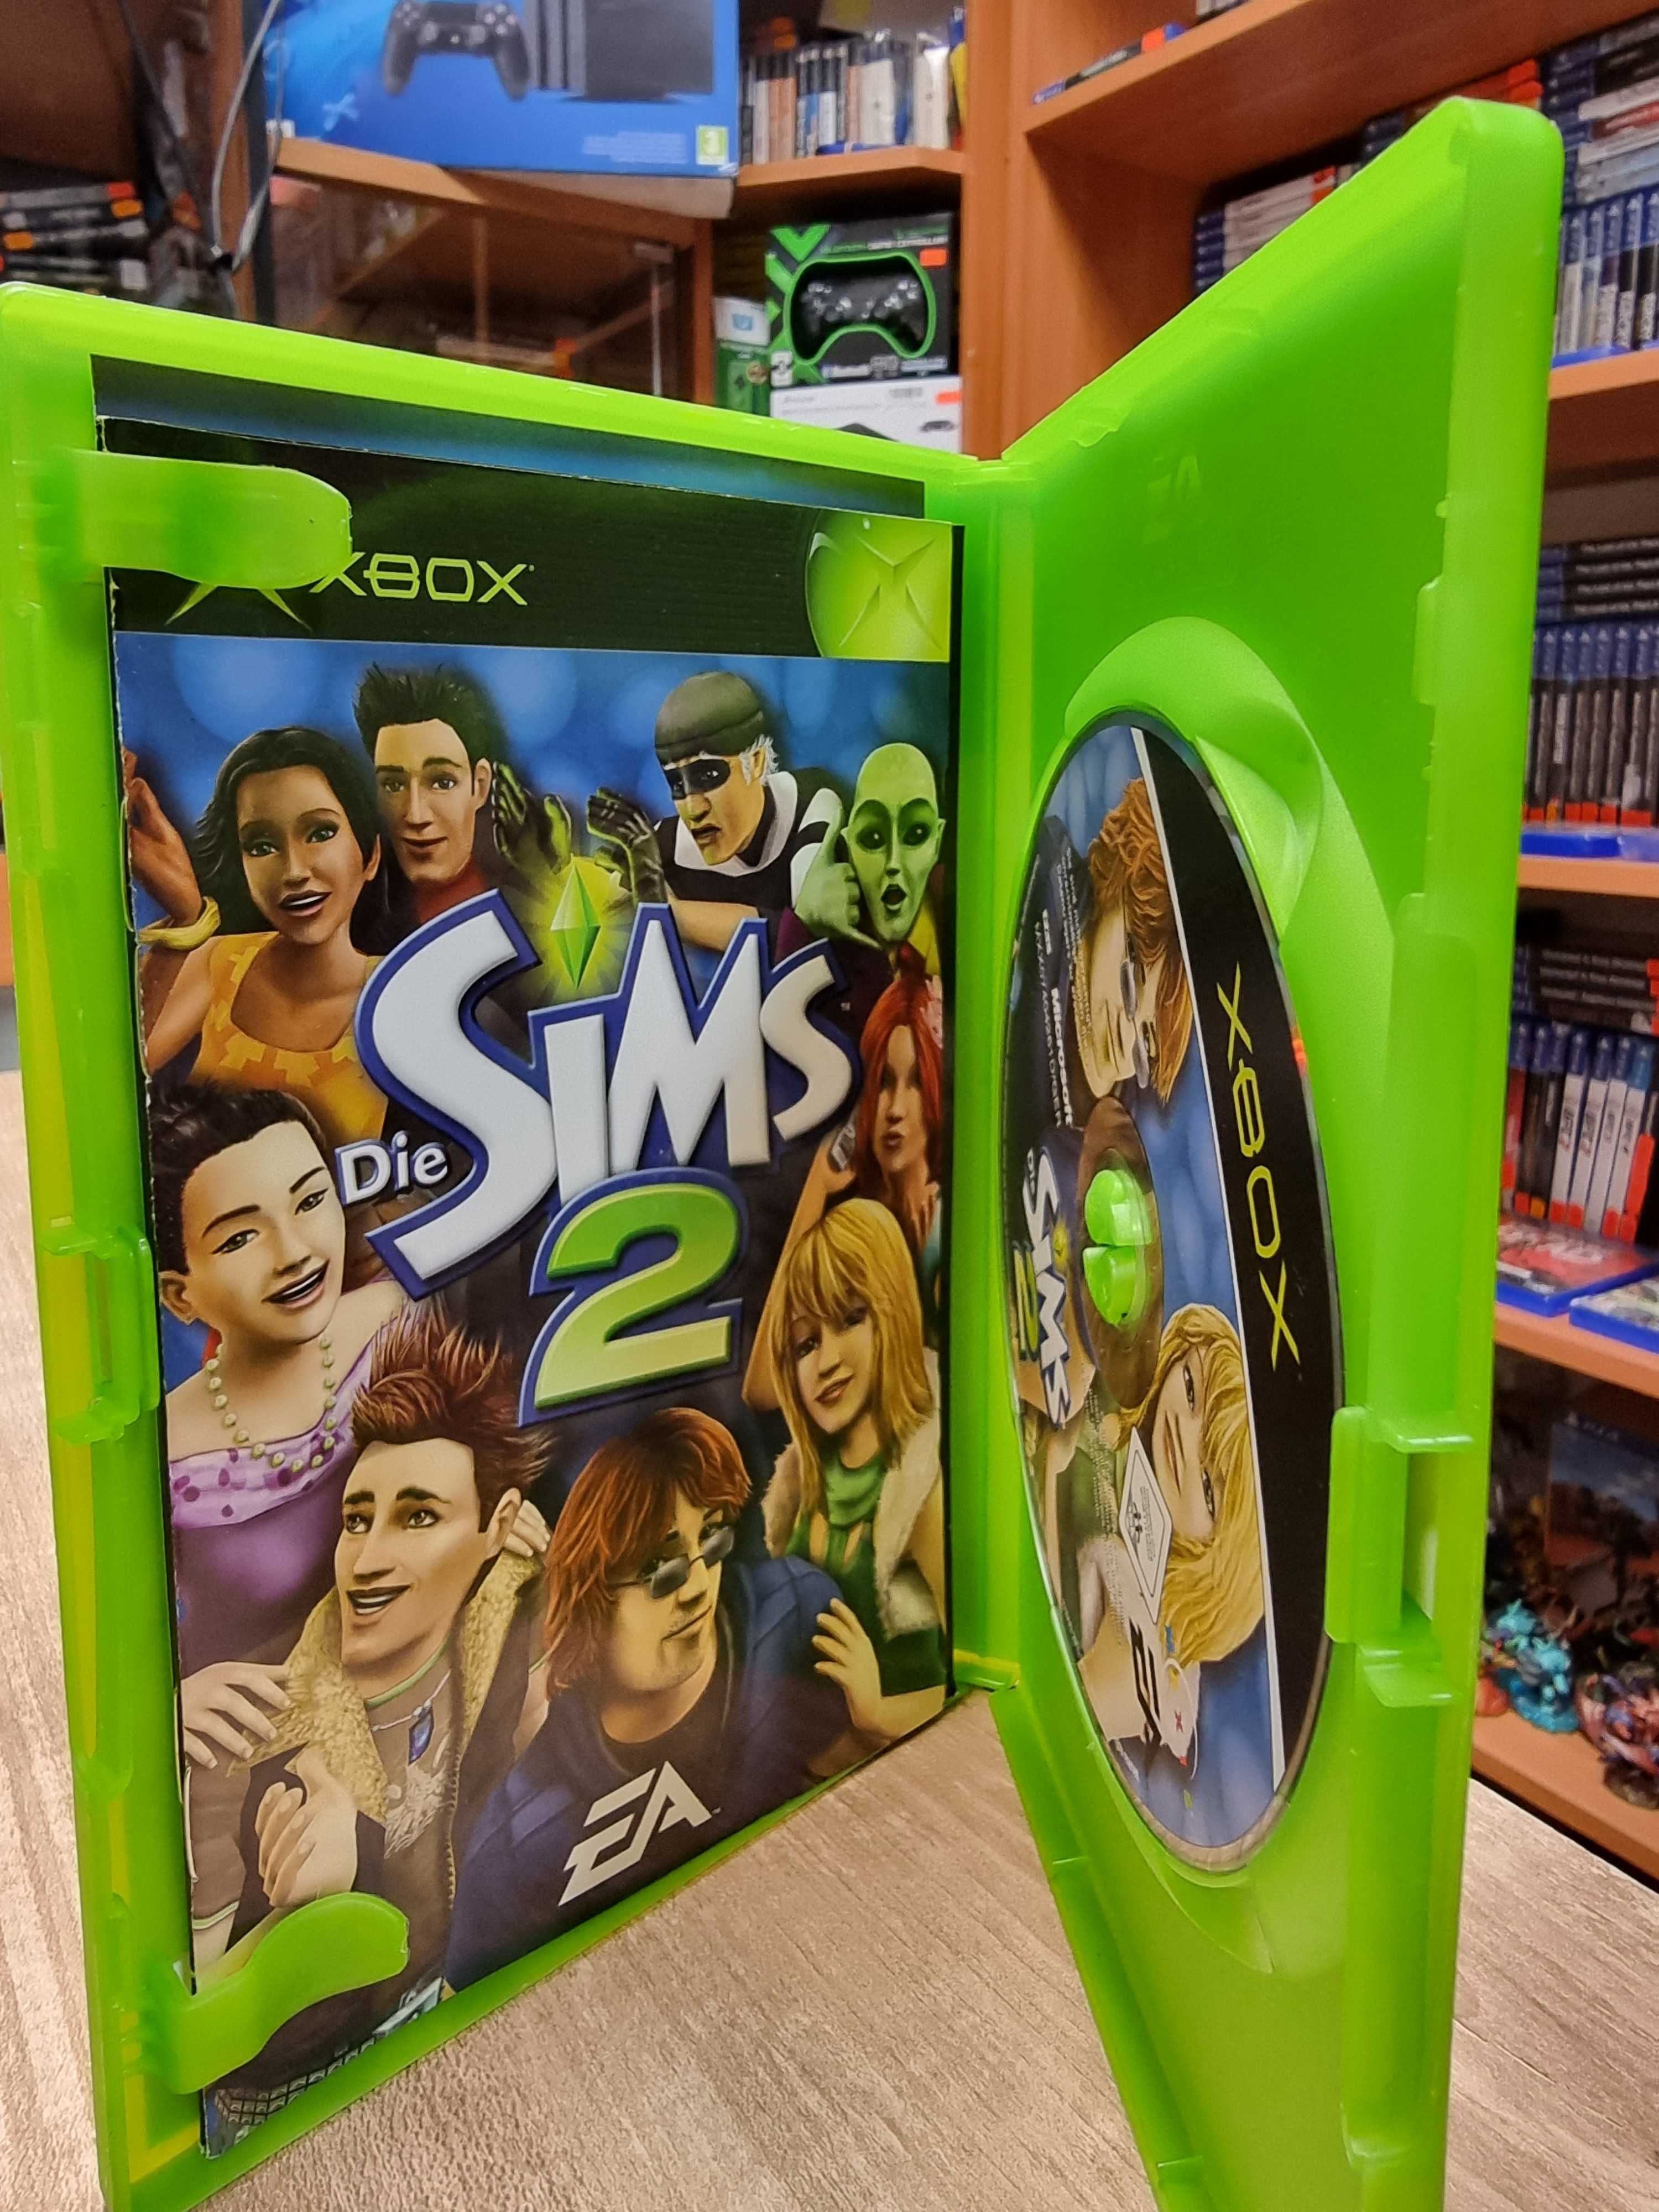 The Sims 2 XBOX, Sklep Wysyłka Wymiana